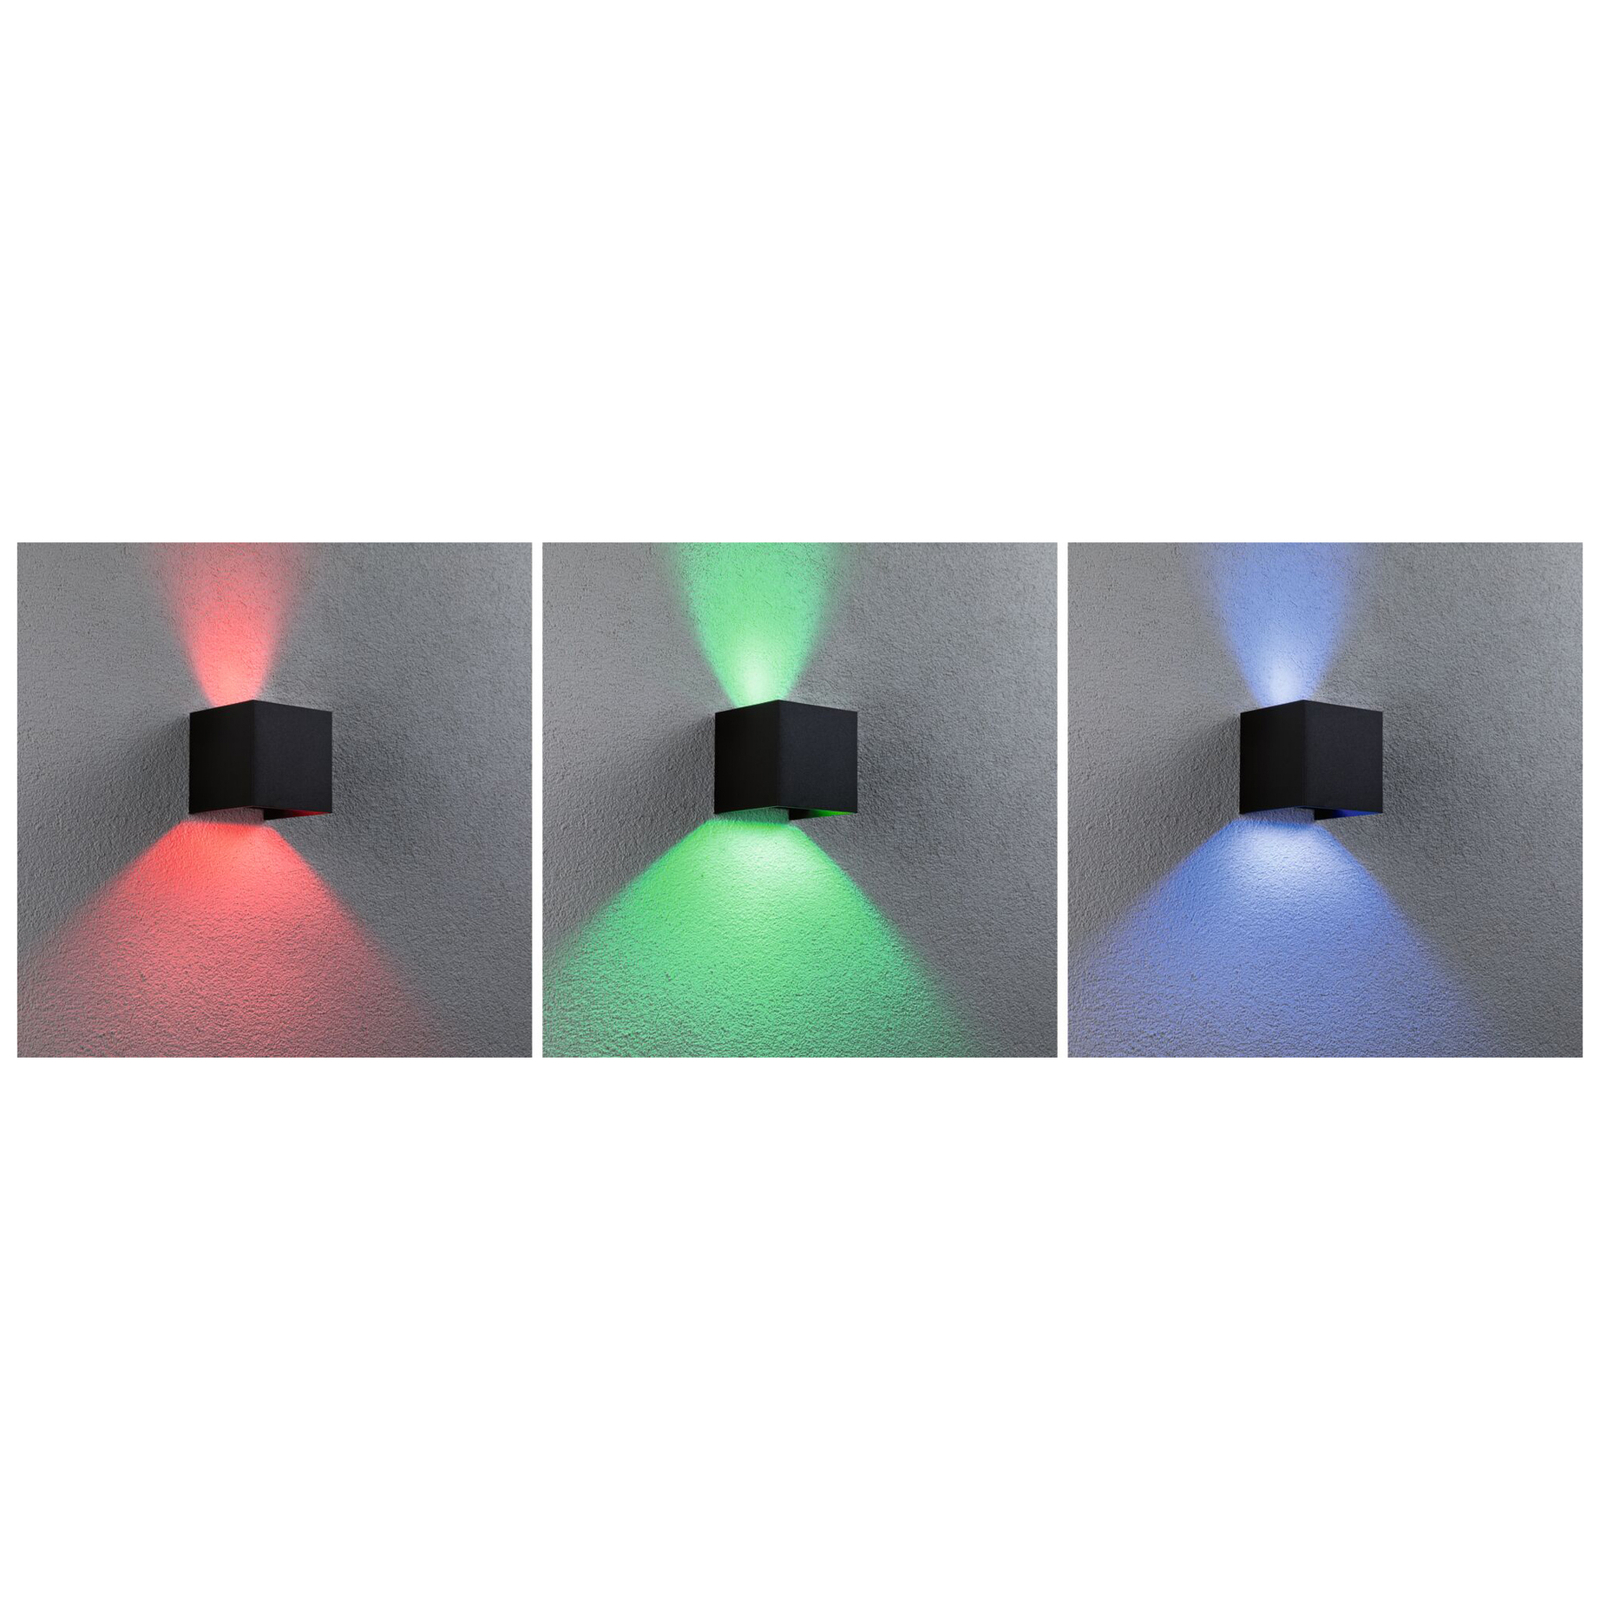 Venkovní nástěnné svítidlo Paulmann Cybo LED, RGBW, 10x10cm, antracitová